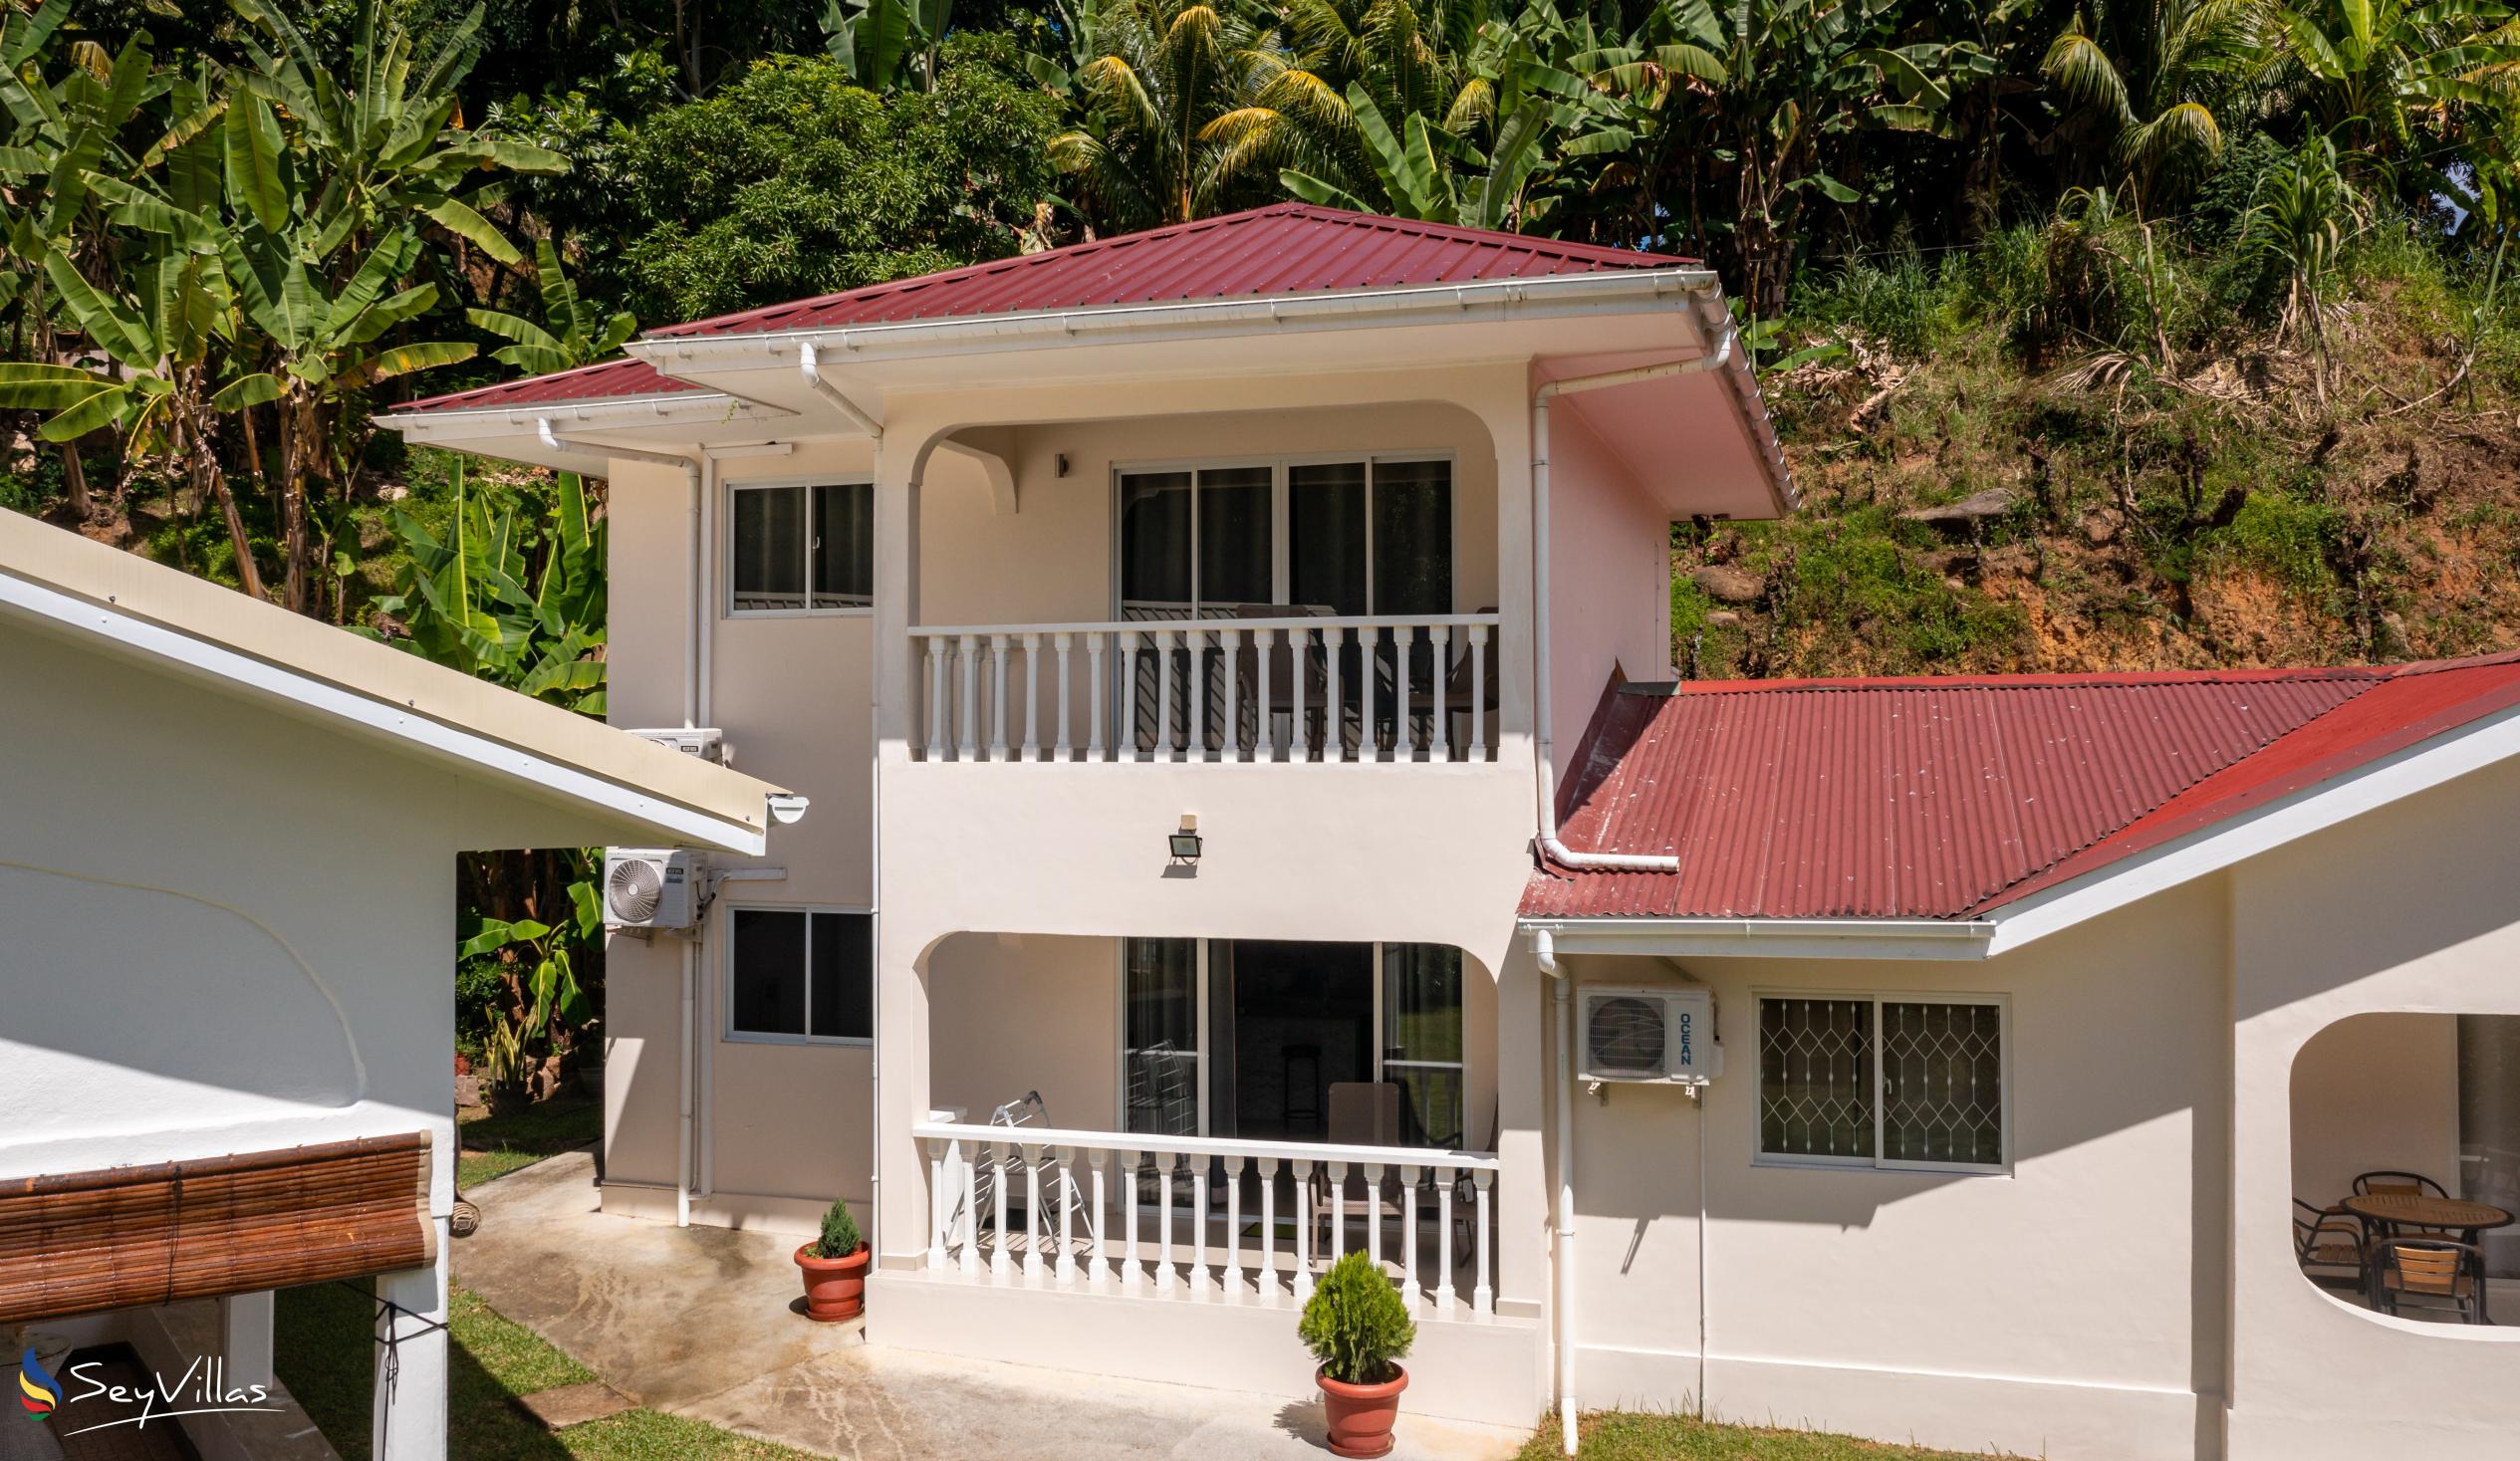 Photo 2: Paul's Residence - Outdoor area - Mahé (Seychelles)